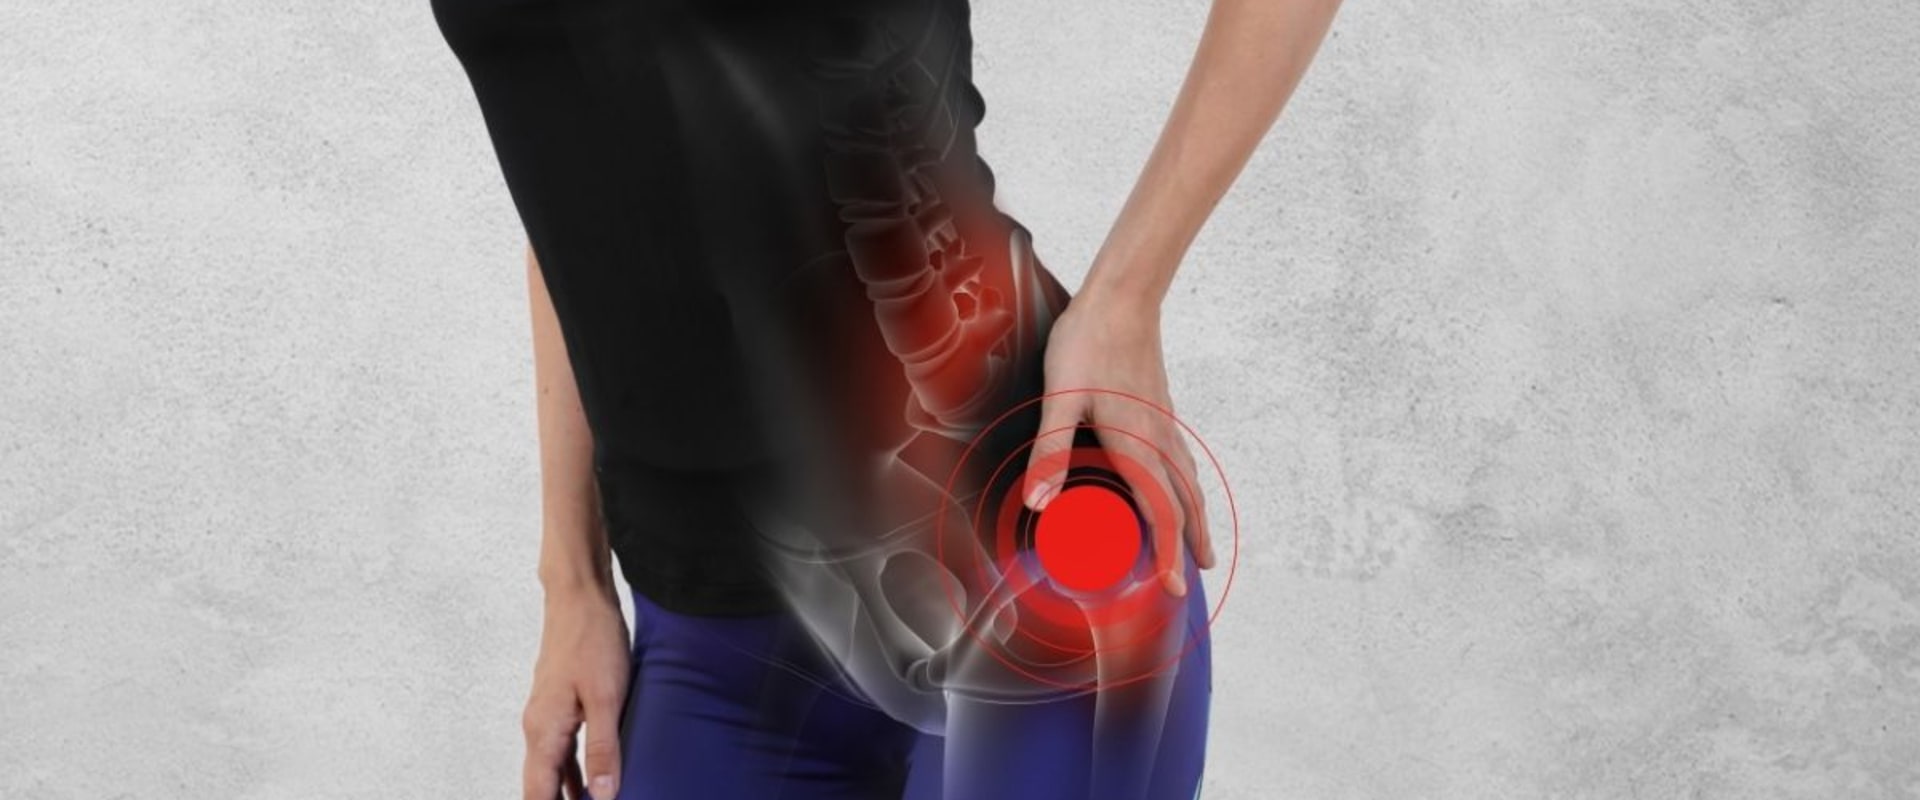 Does deep tissue massage help hip bursitis?